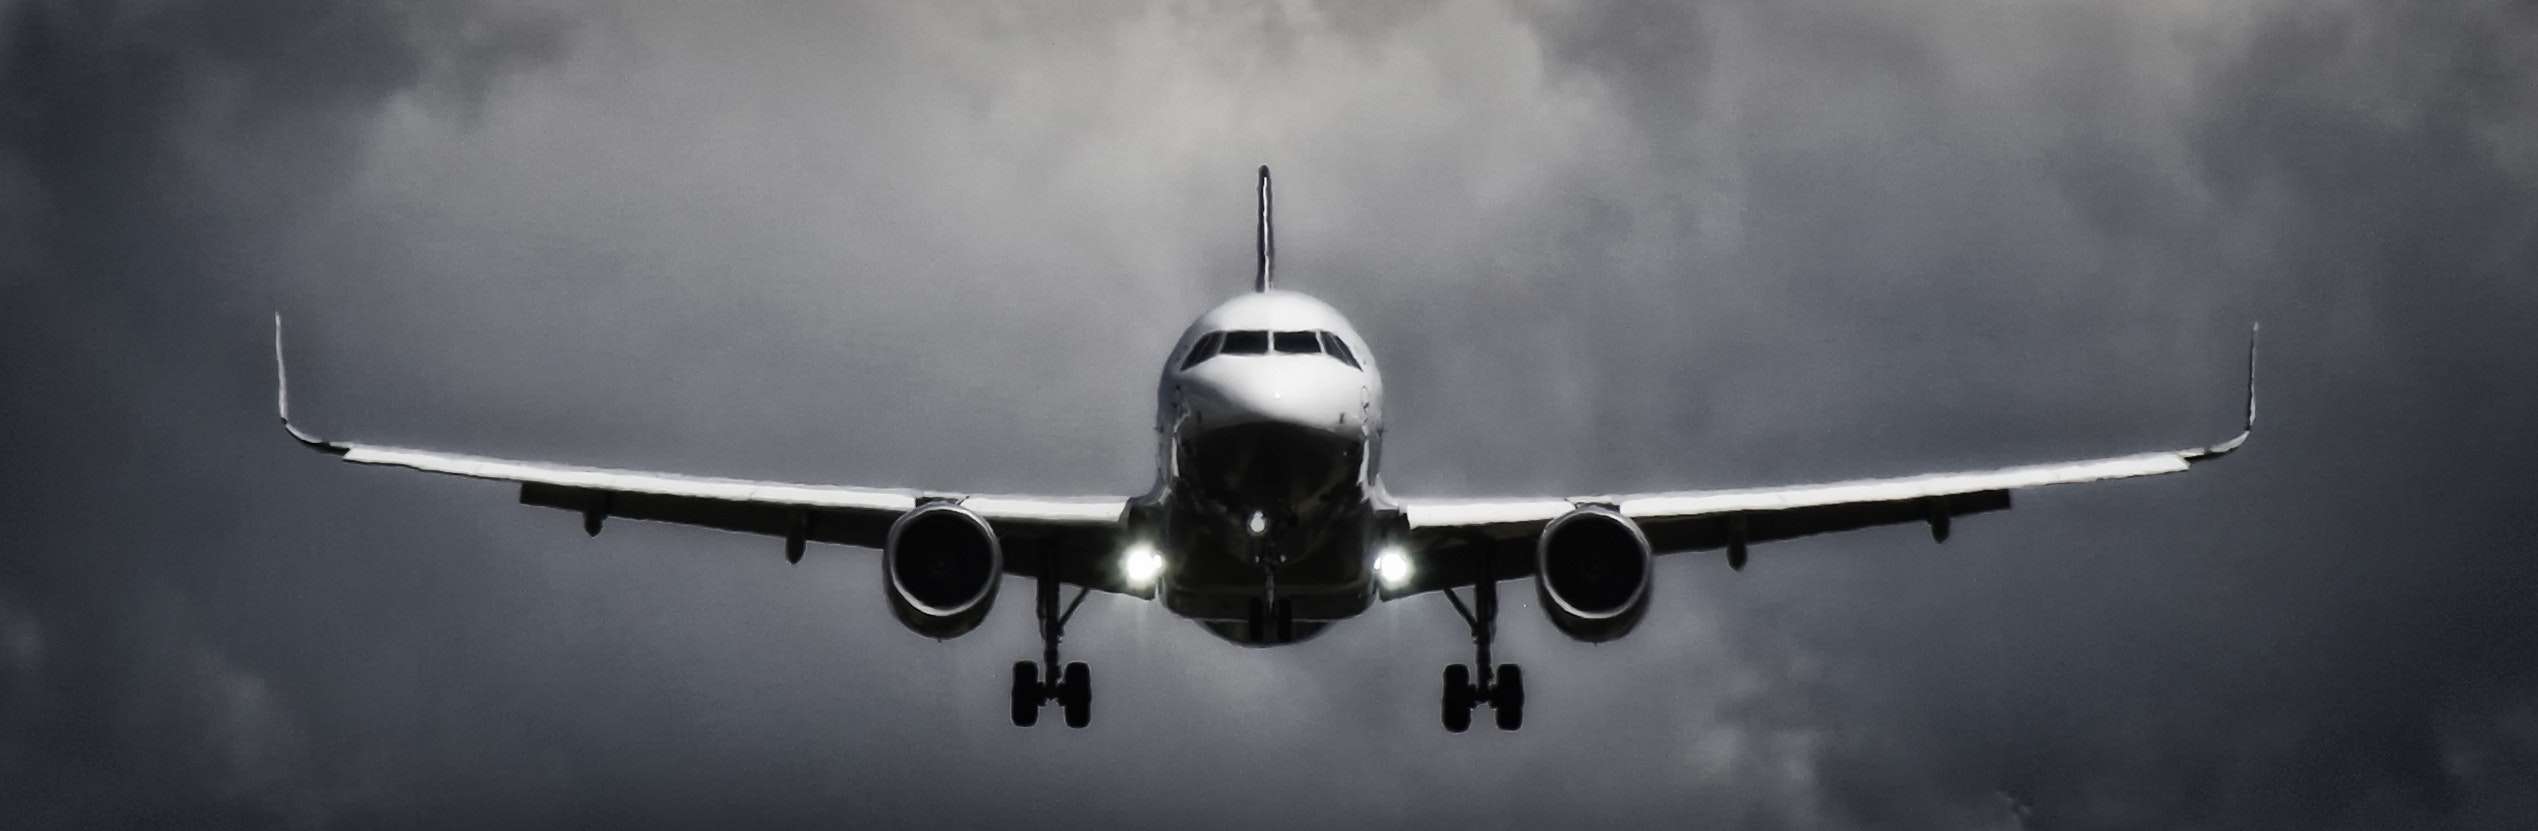 Μια αεροσυνοδός αποκαλύπτει: Η πιο ασφαλής θέση του αεροπλάνου που δεν καταλαβαίνεις αναταράξεις εν ώρα πτήσης